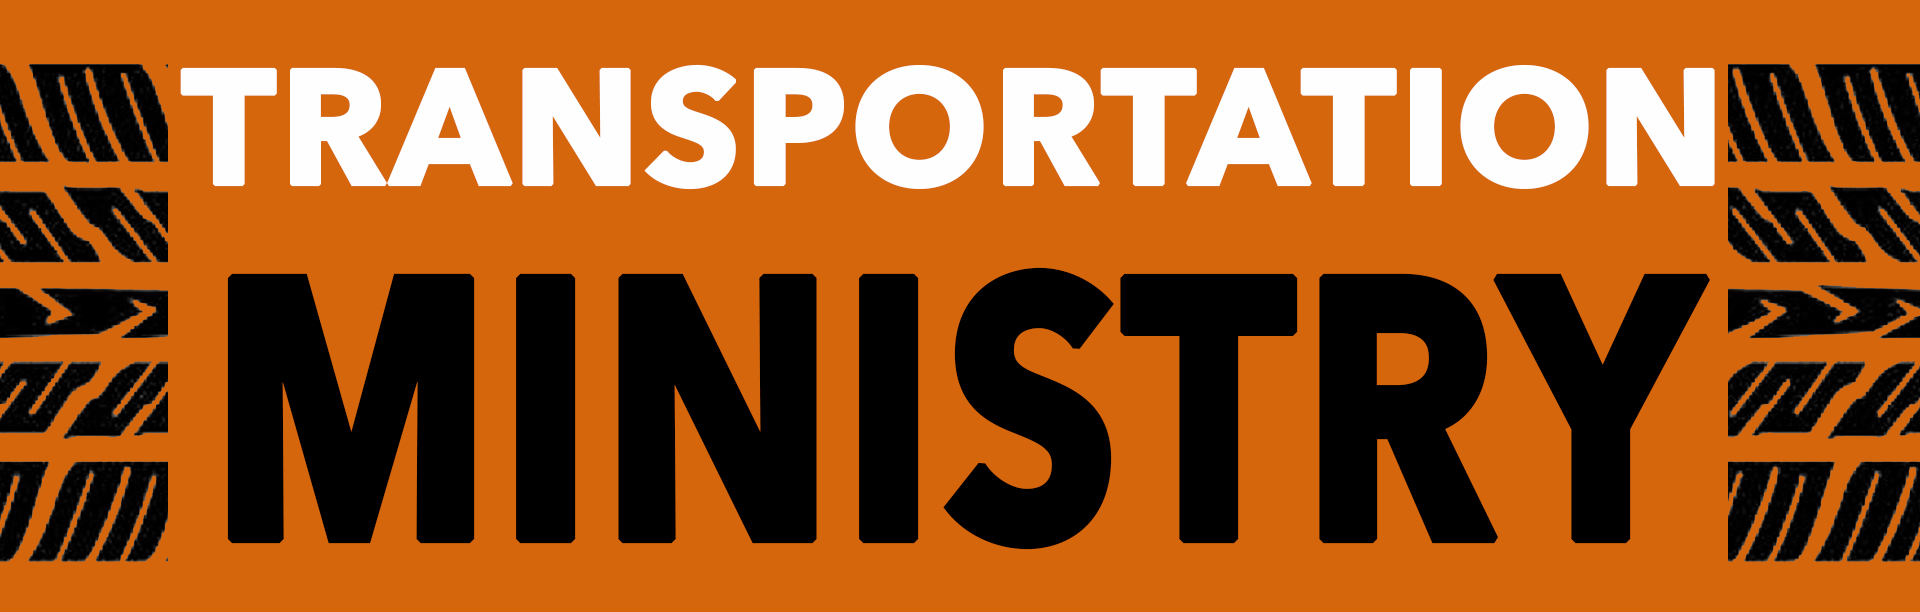 Transportation Ministry Logo 2016